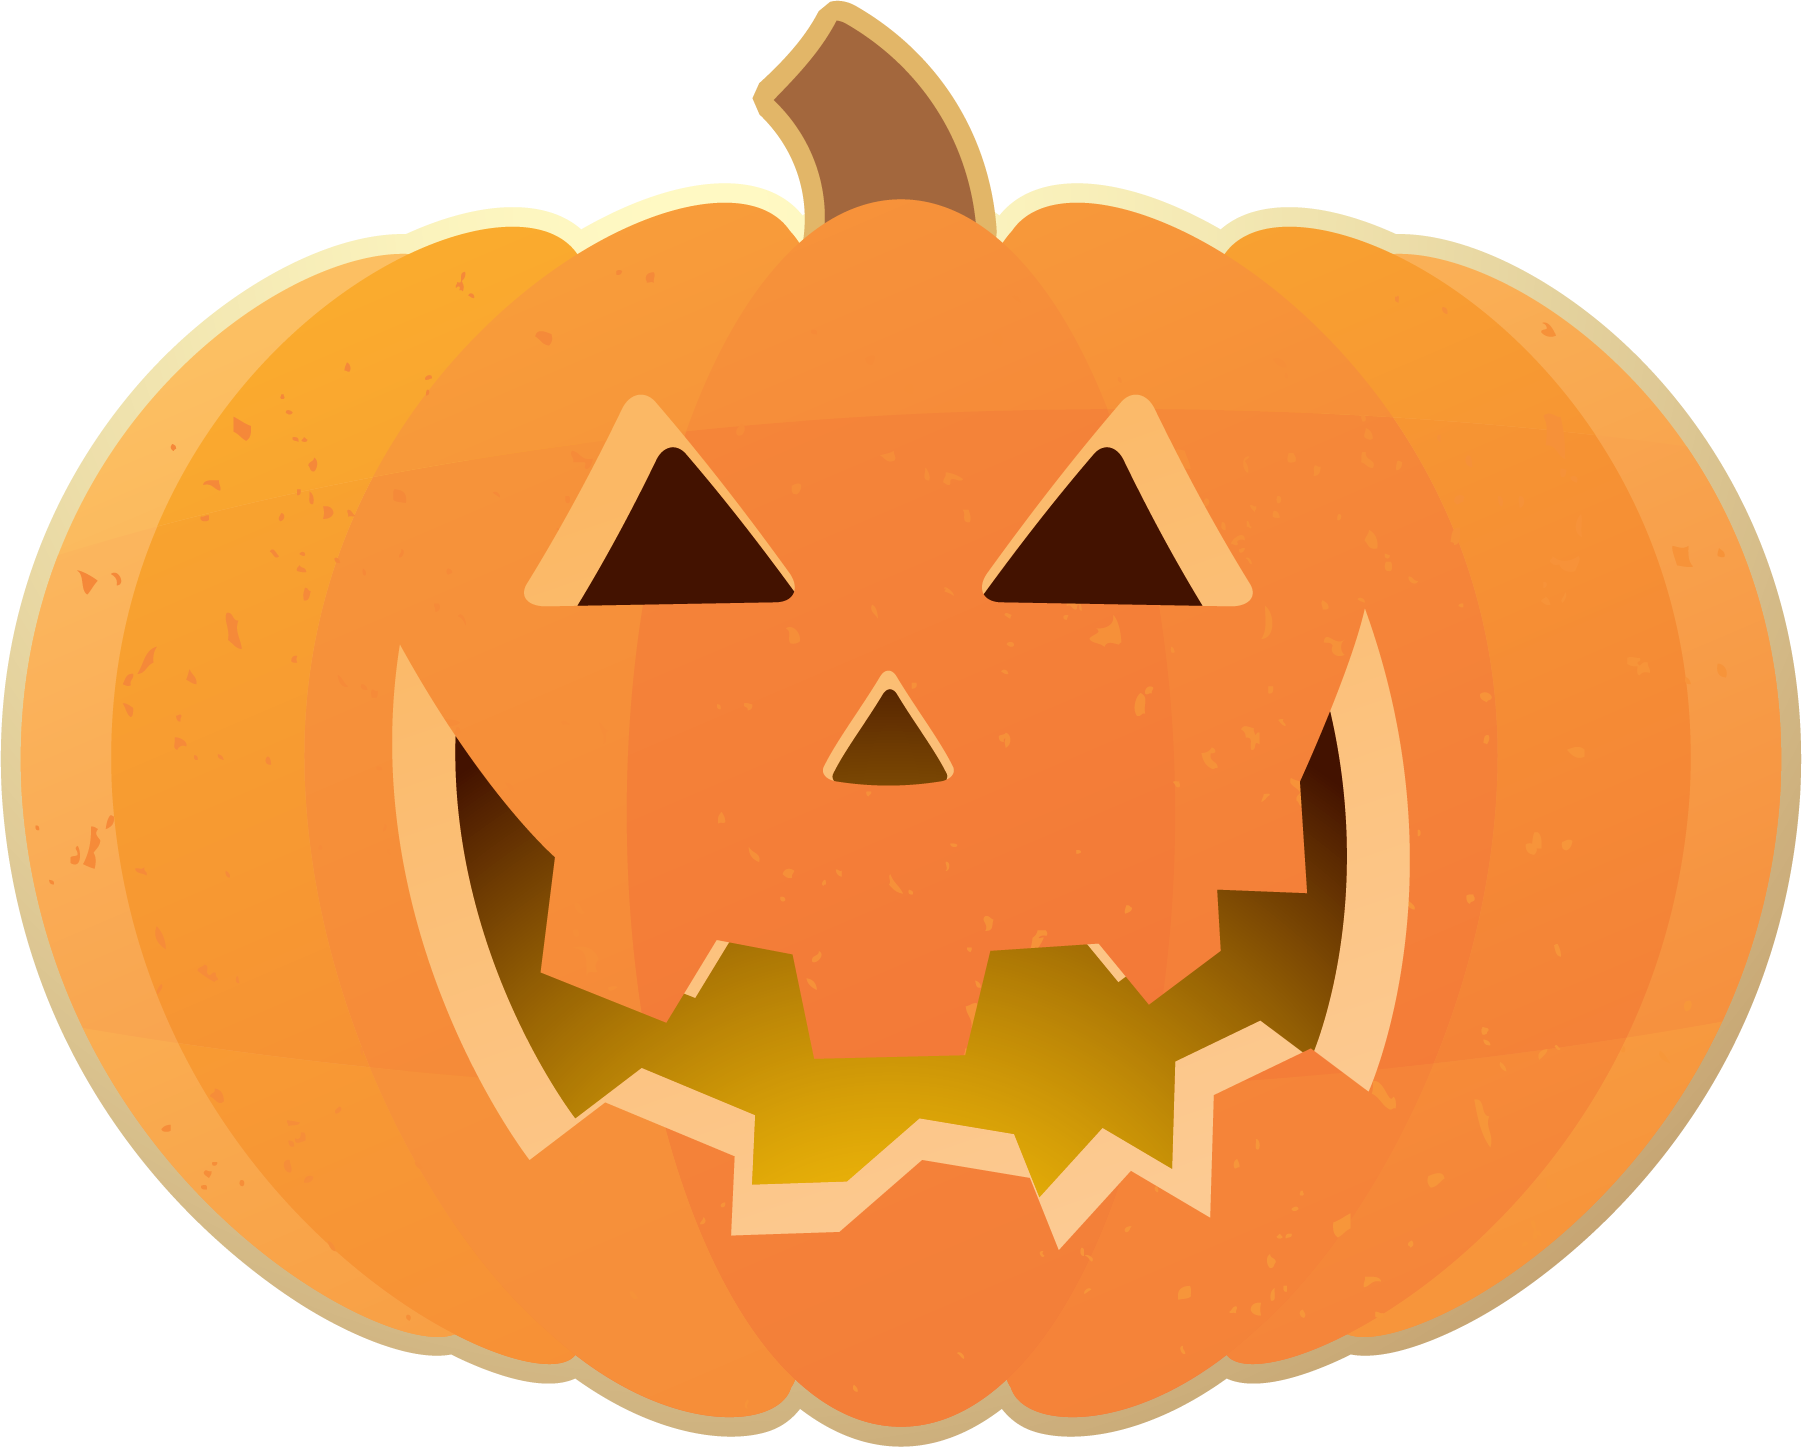 Free halloween pumpkin clipart